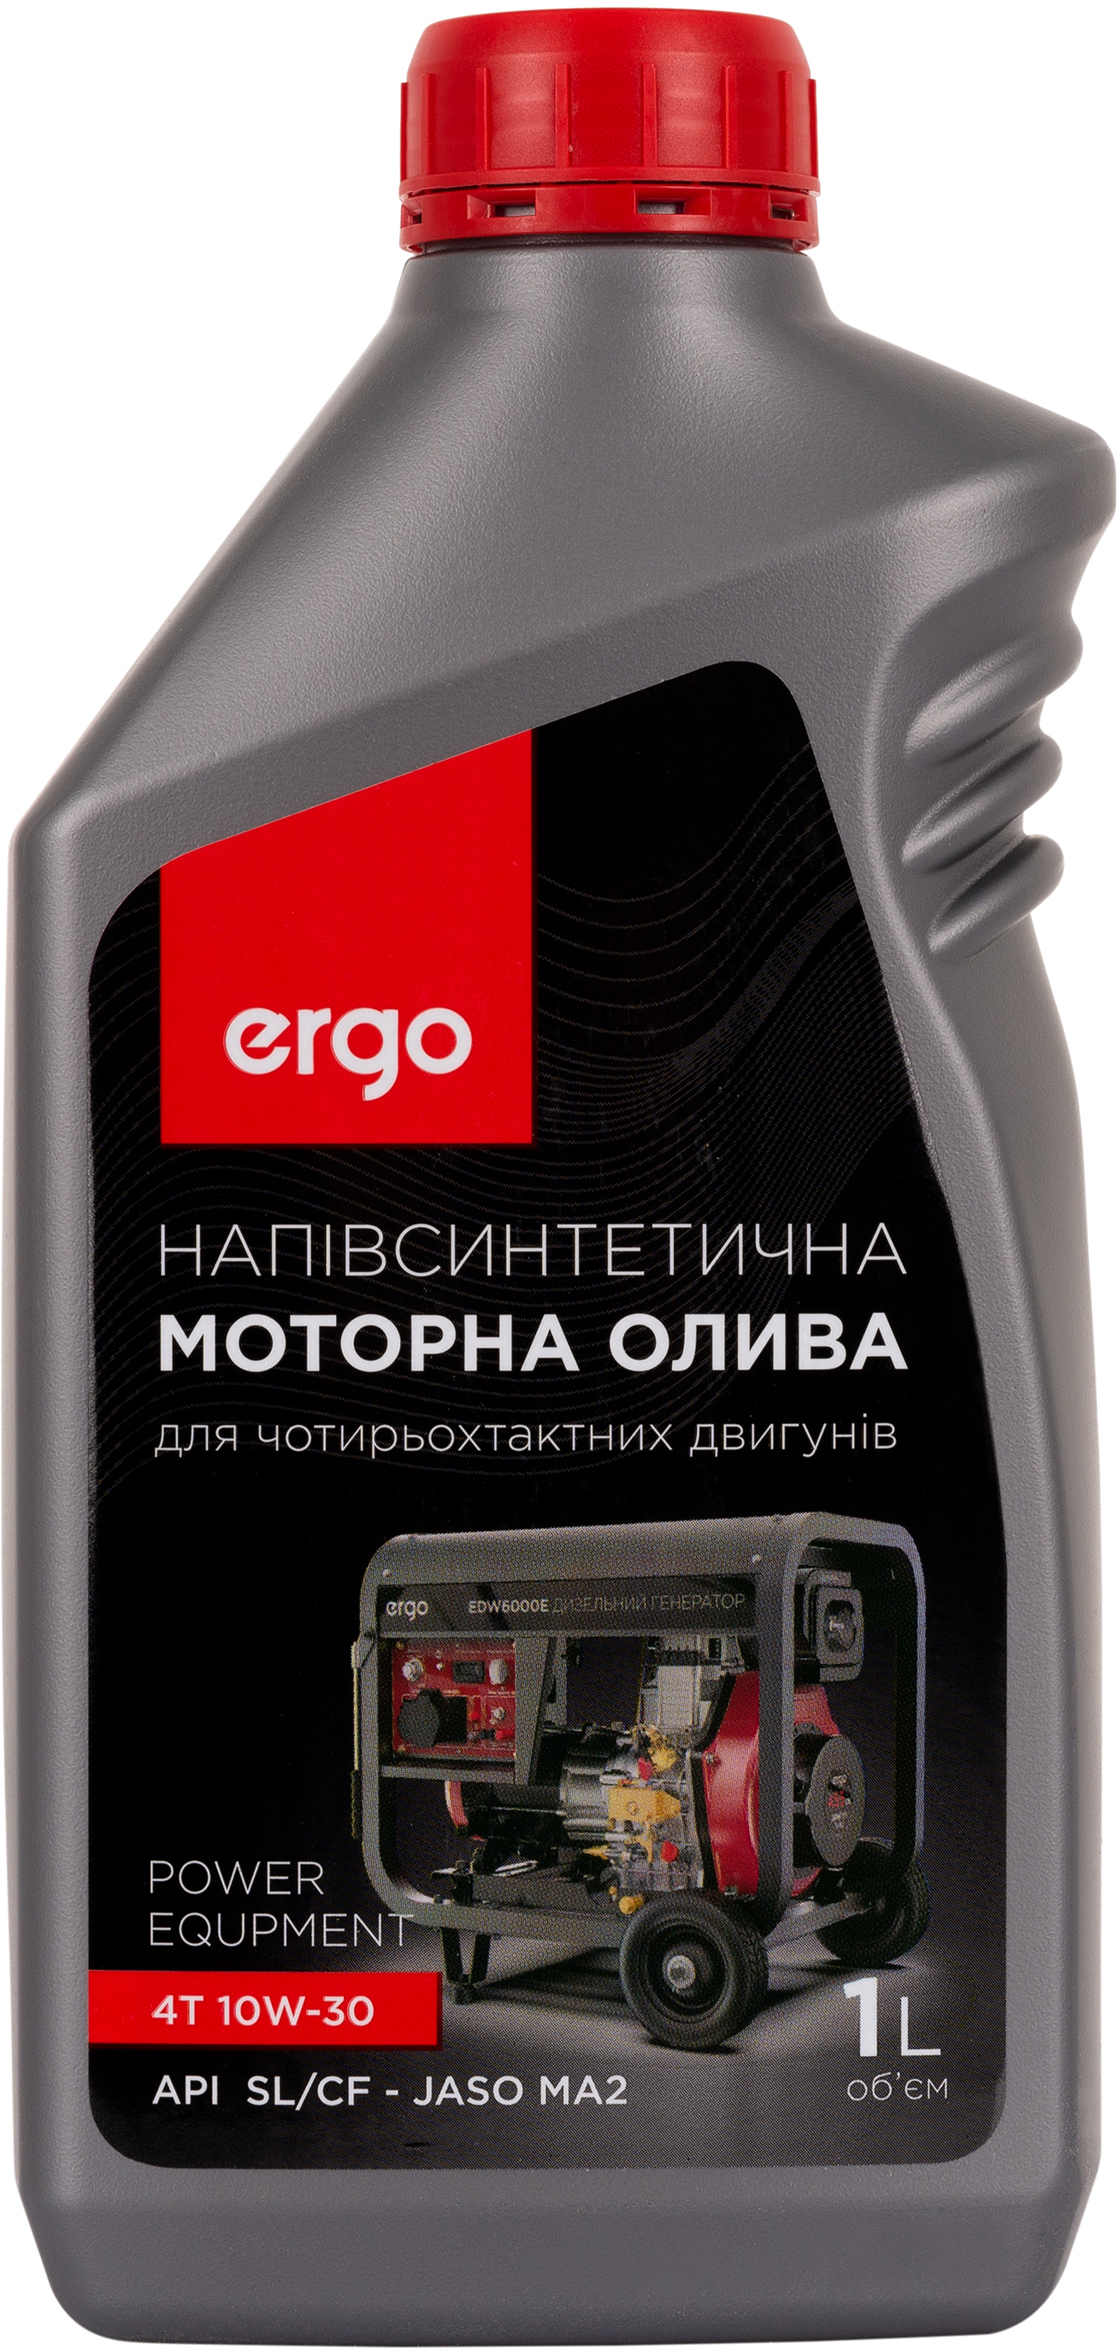 Цена моторное масло Ergo 10W-30, 1 л в Киеве